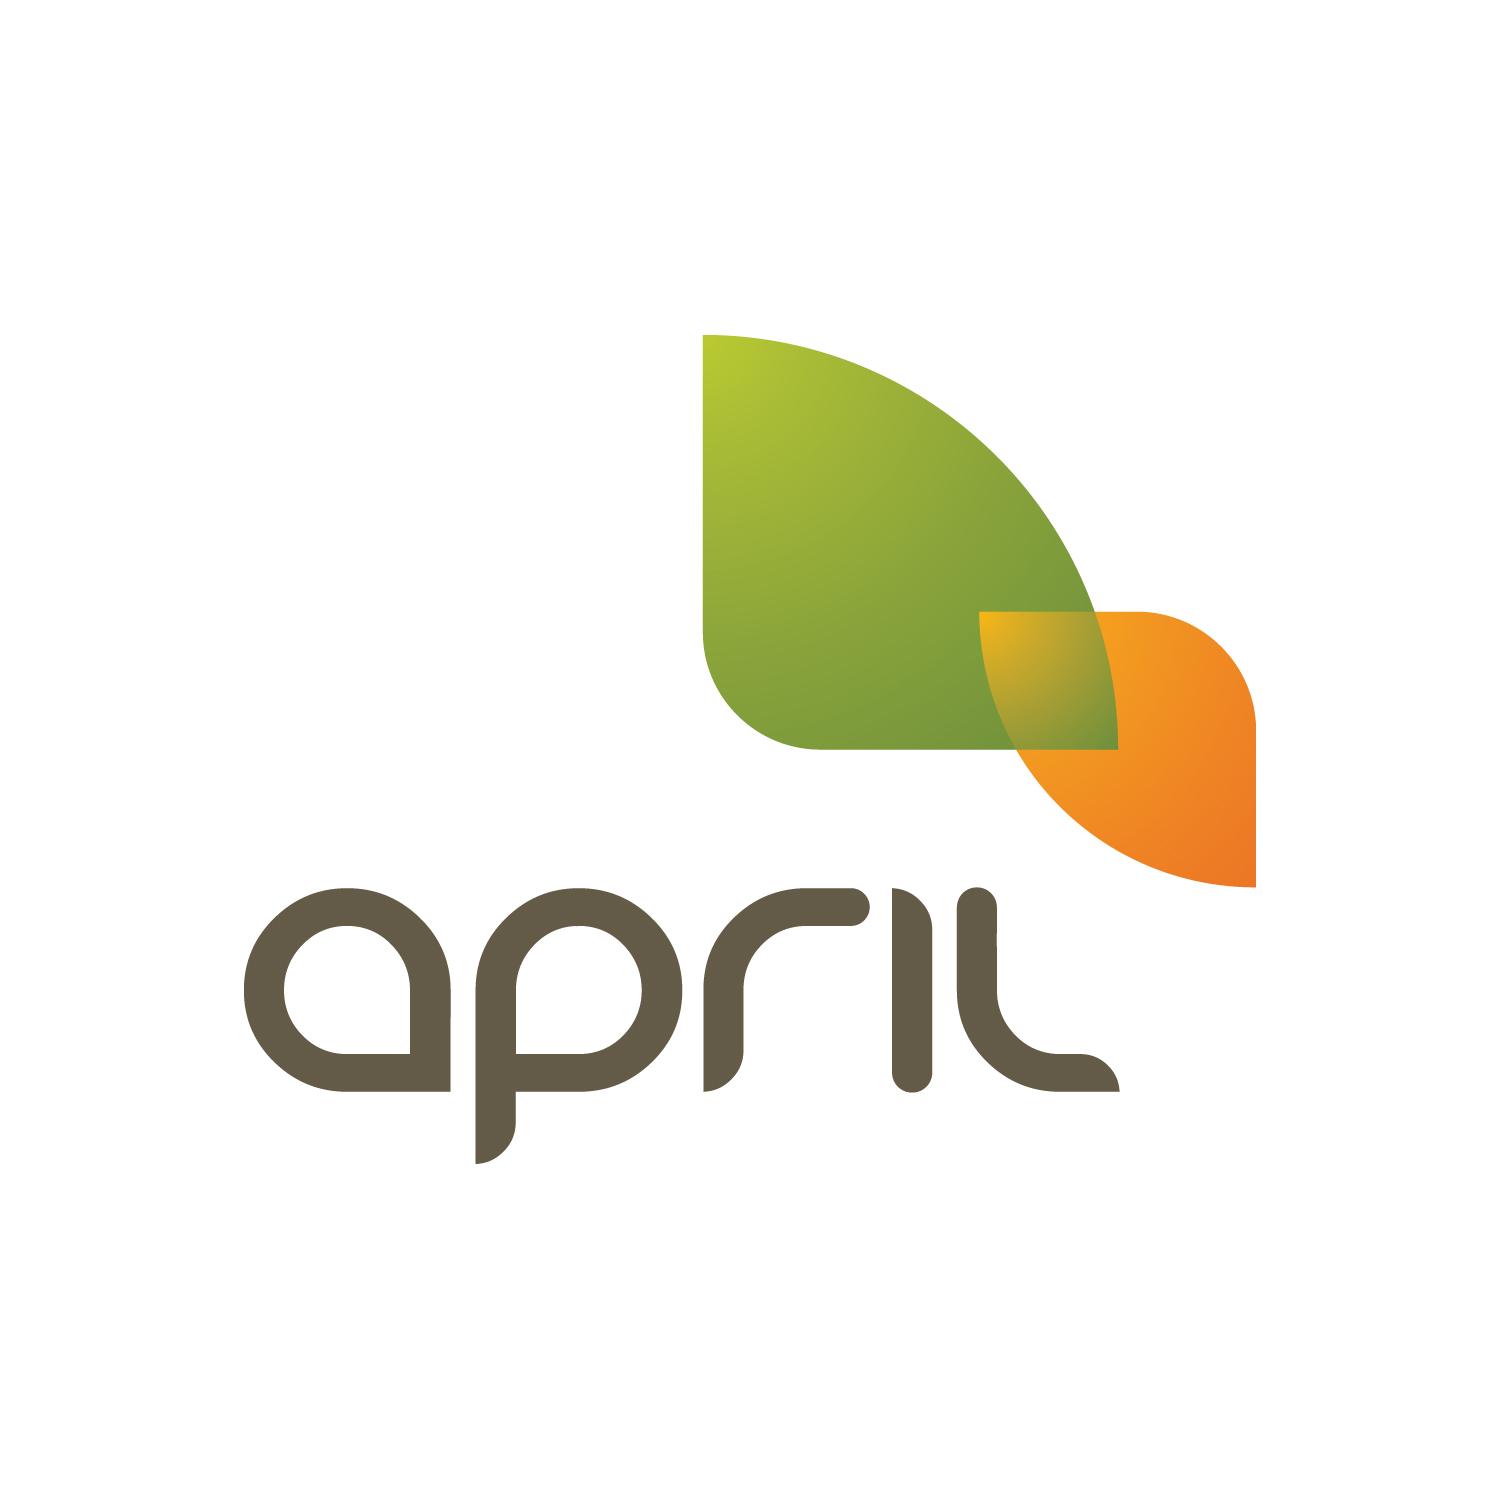 April Logo - april logo